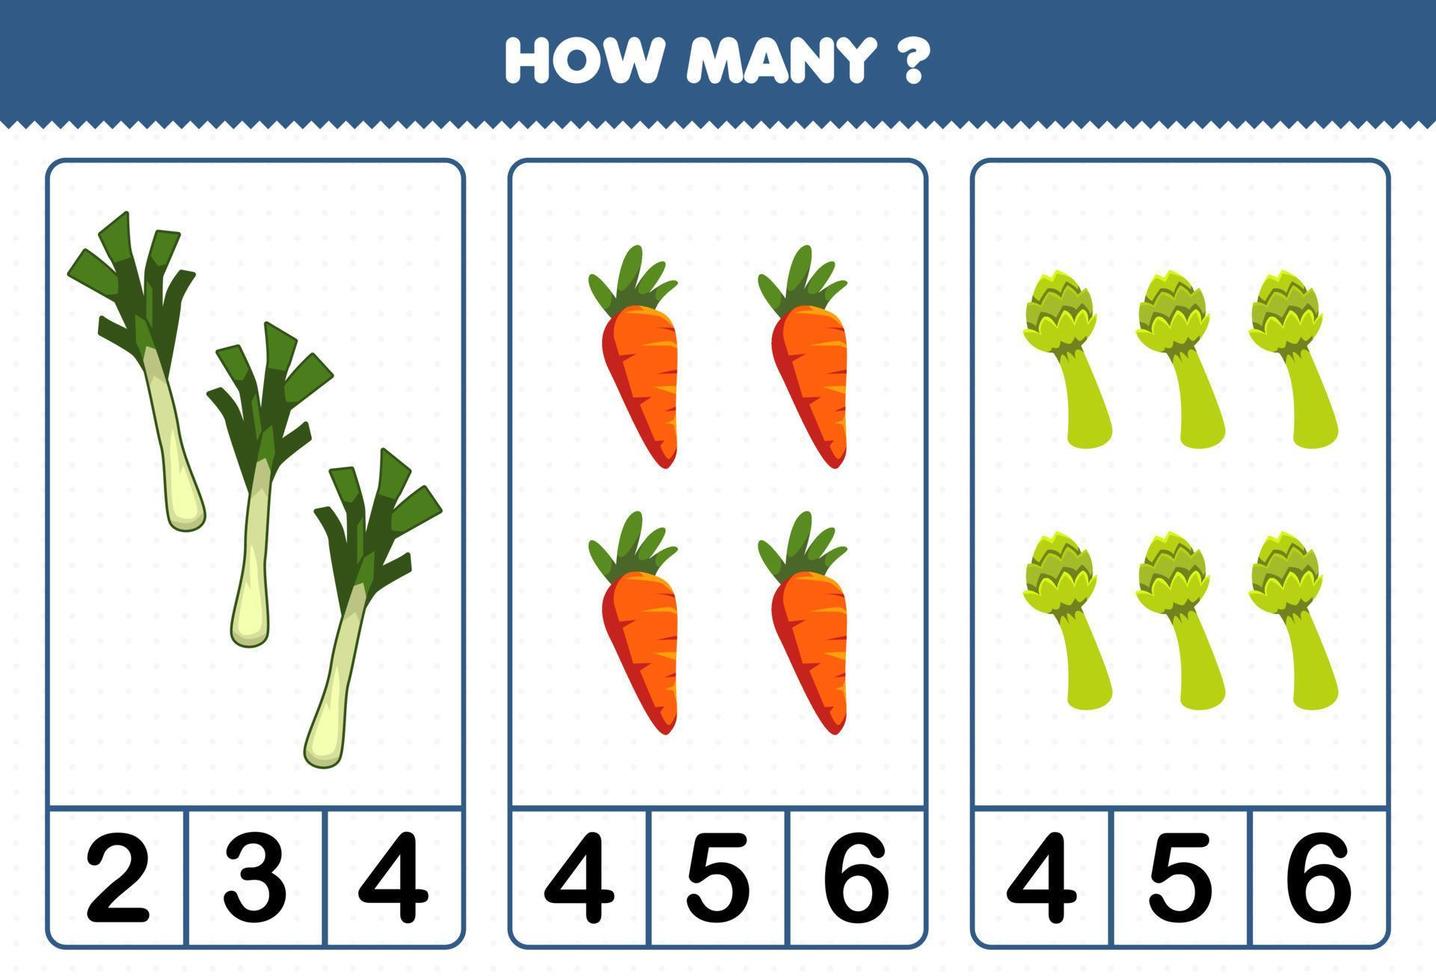 jeu éducatif pour les enfants comptant combien de légumes de dessin animé poireau carotte asperge vecteur